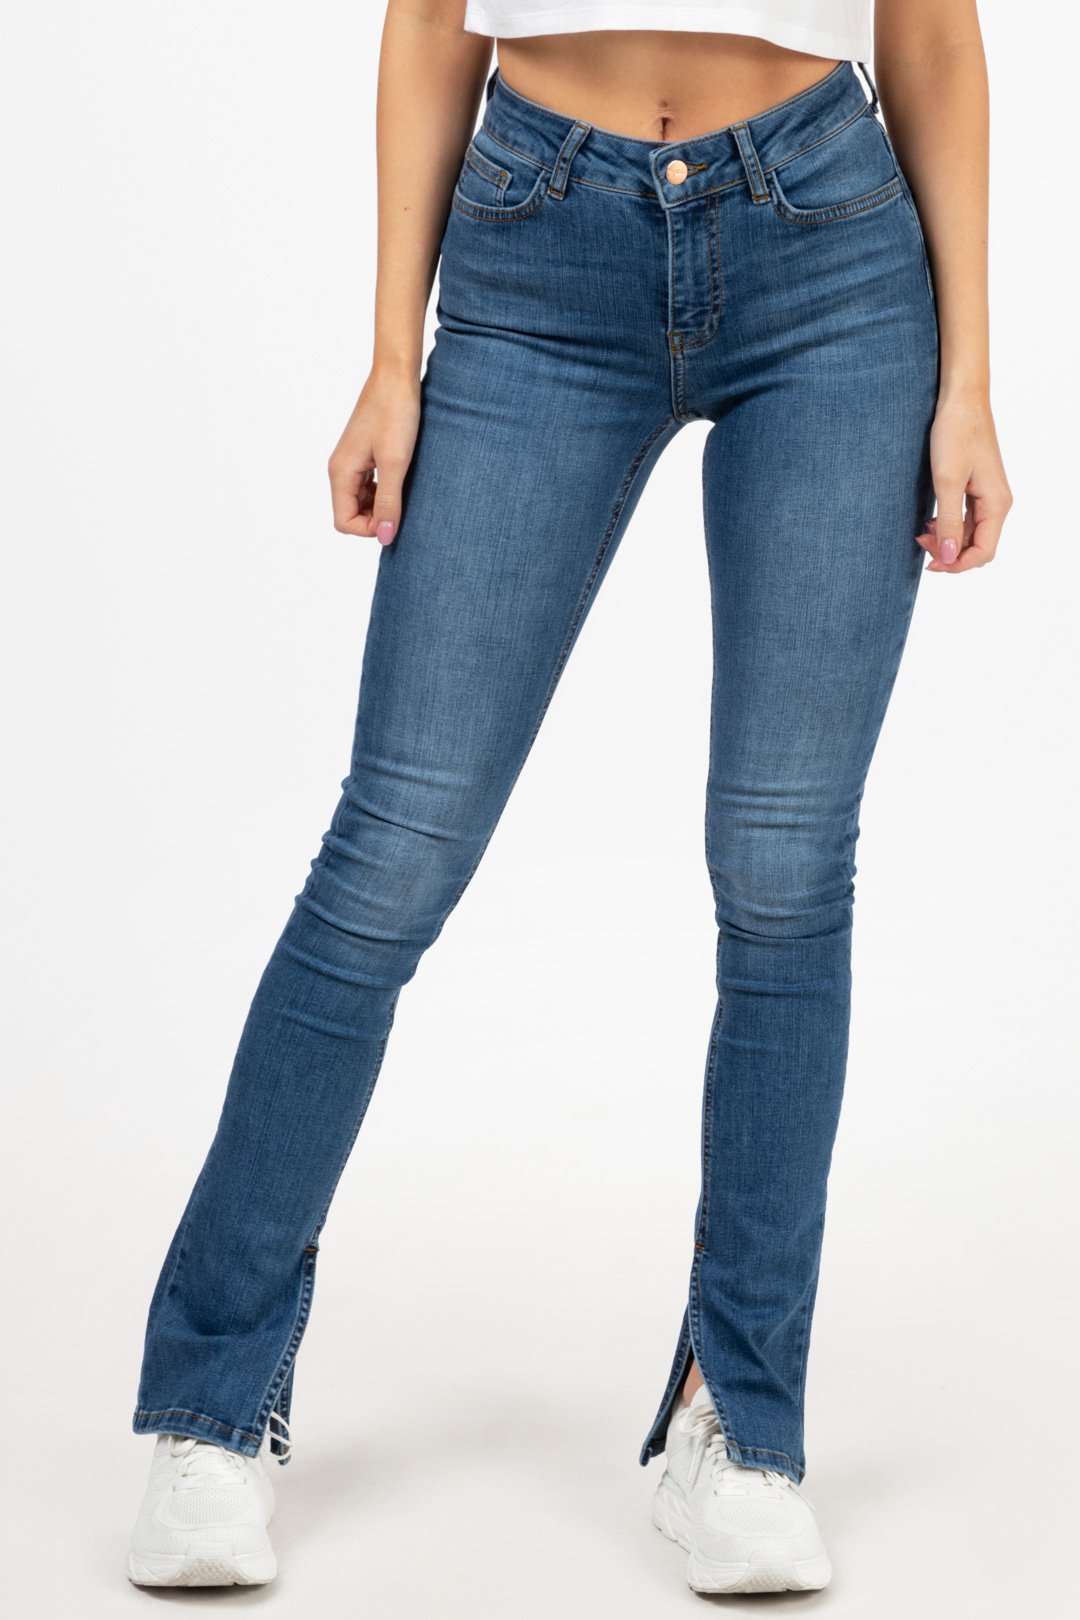 Hvad er der galt Gentage sig Korridor Jeans guide | Find dine perfekte jeans! | Gratis fragt – Famme